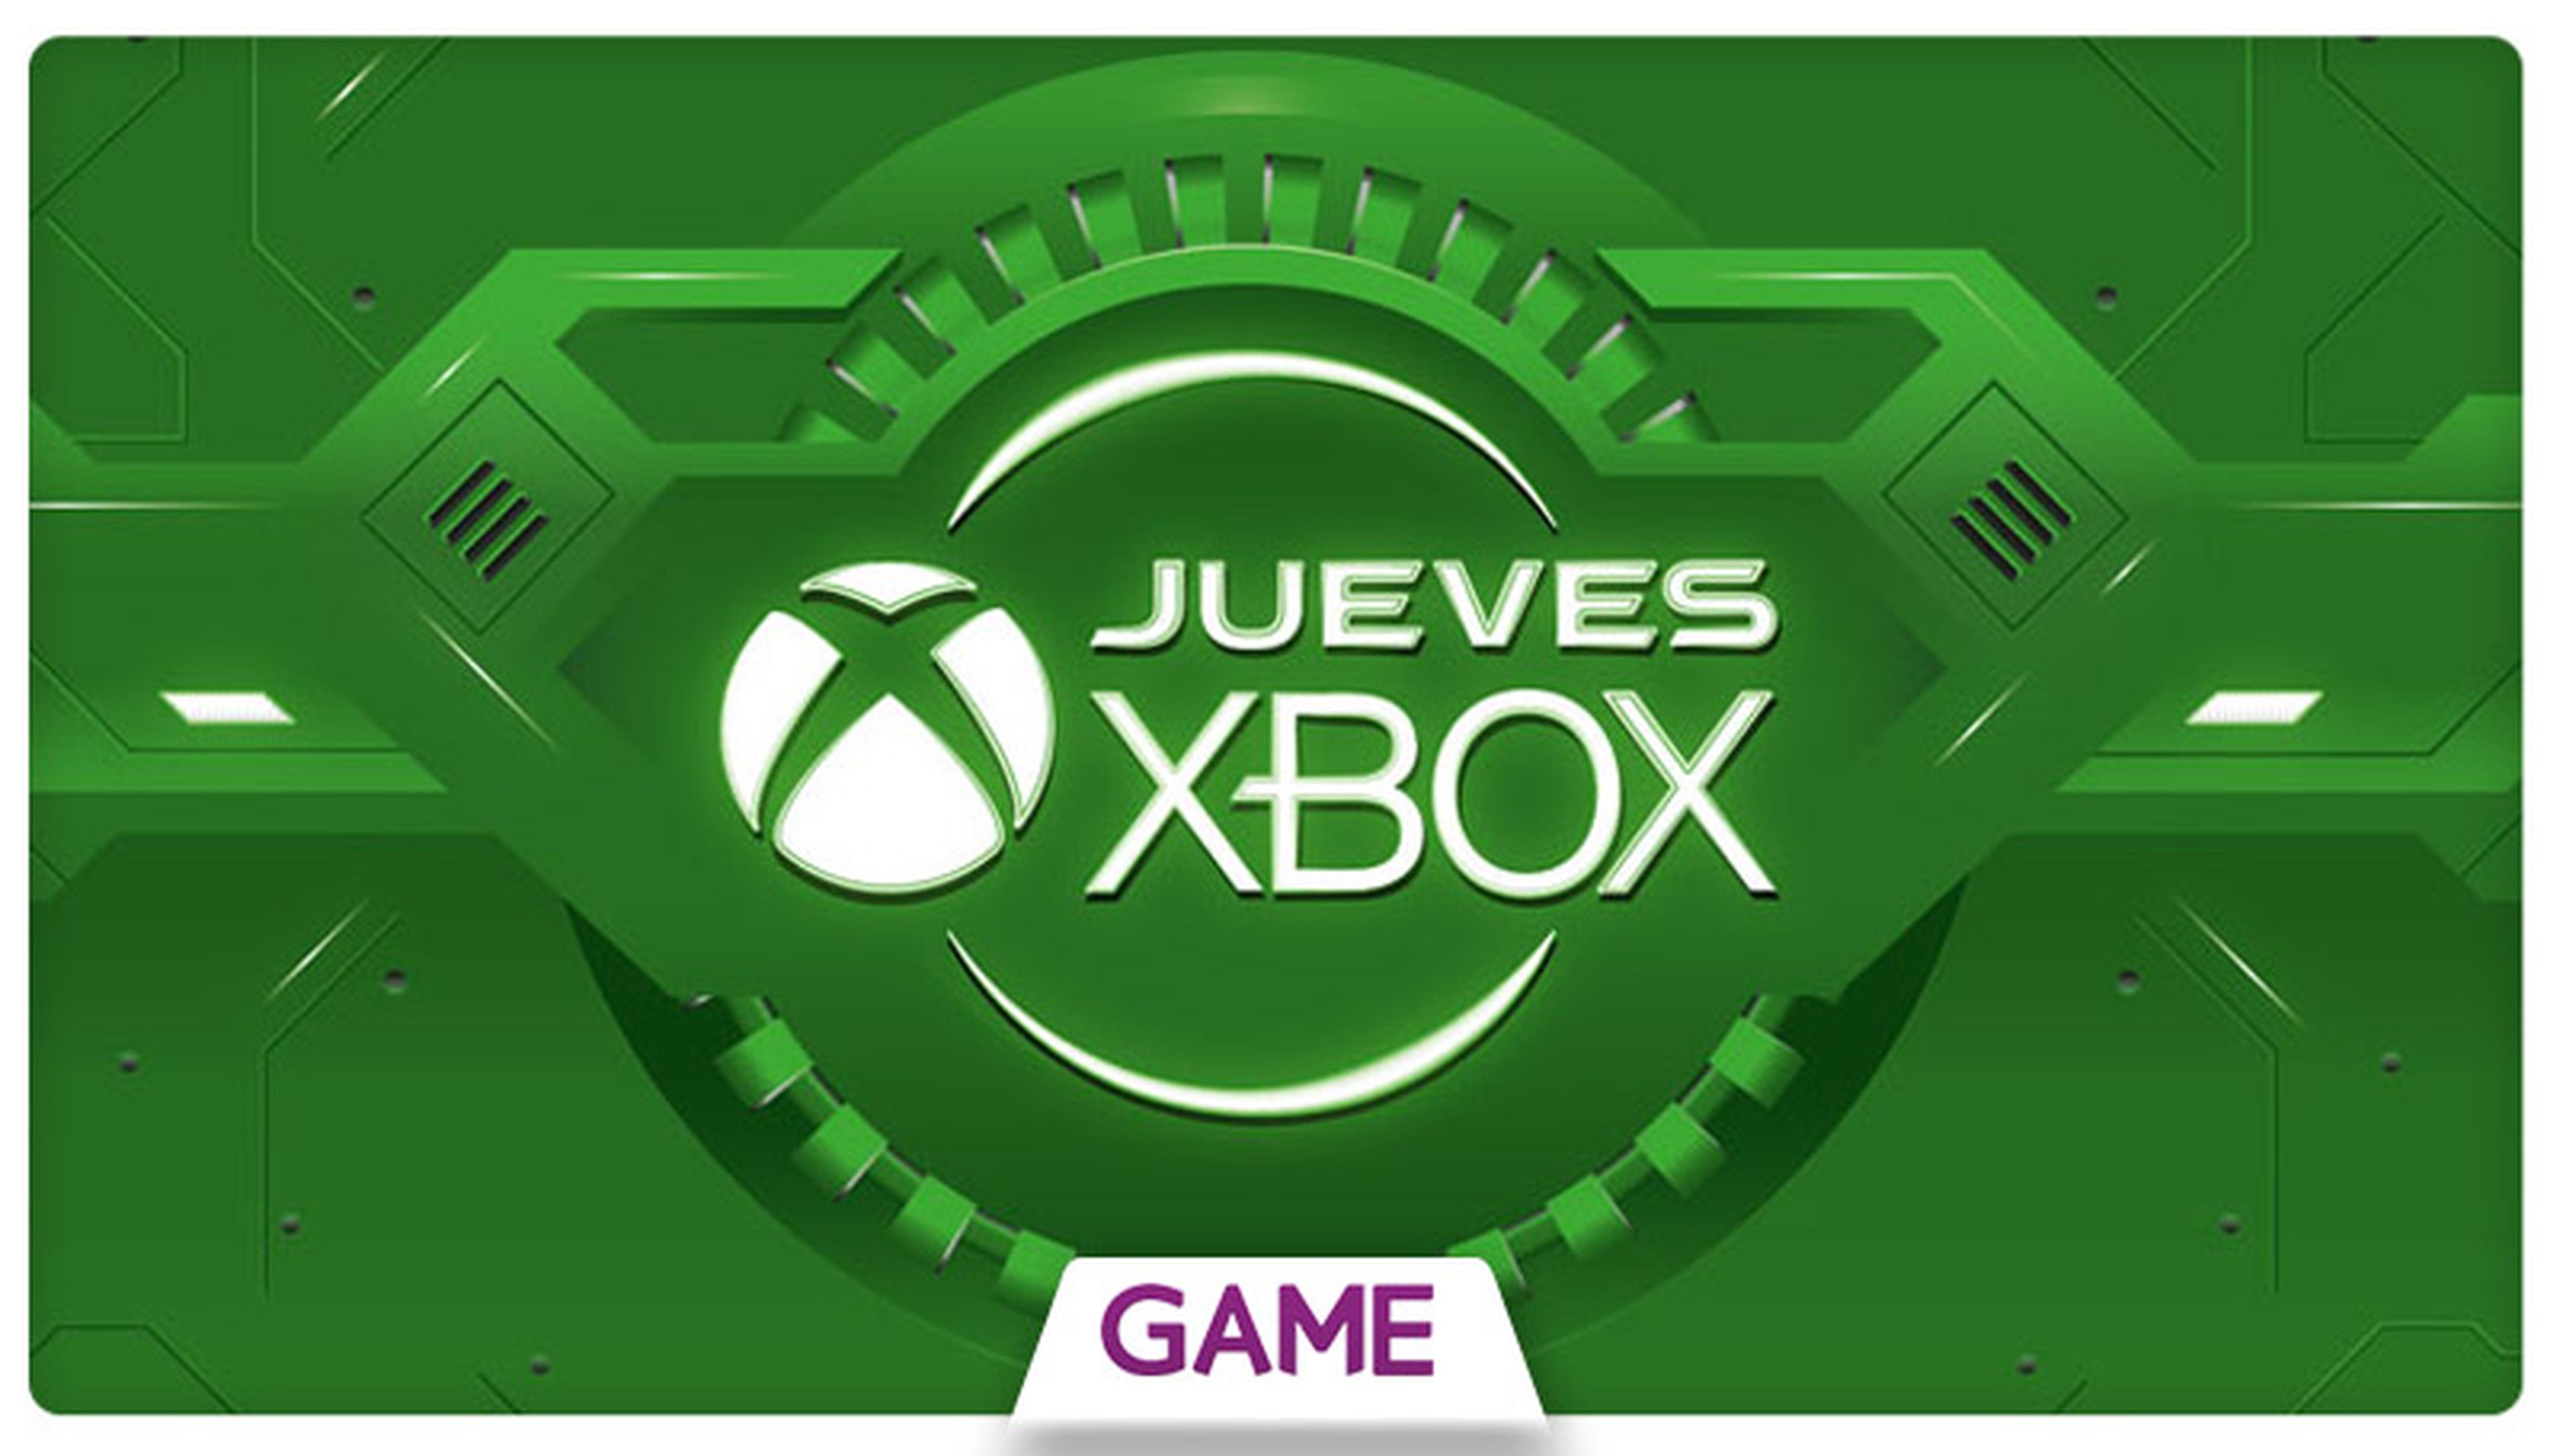 Jueves Xbox en GAME: Ofertas del 05/11/2015